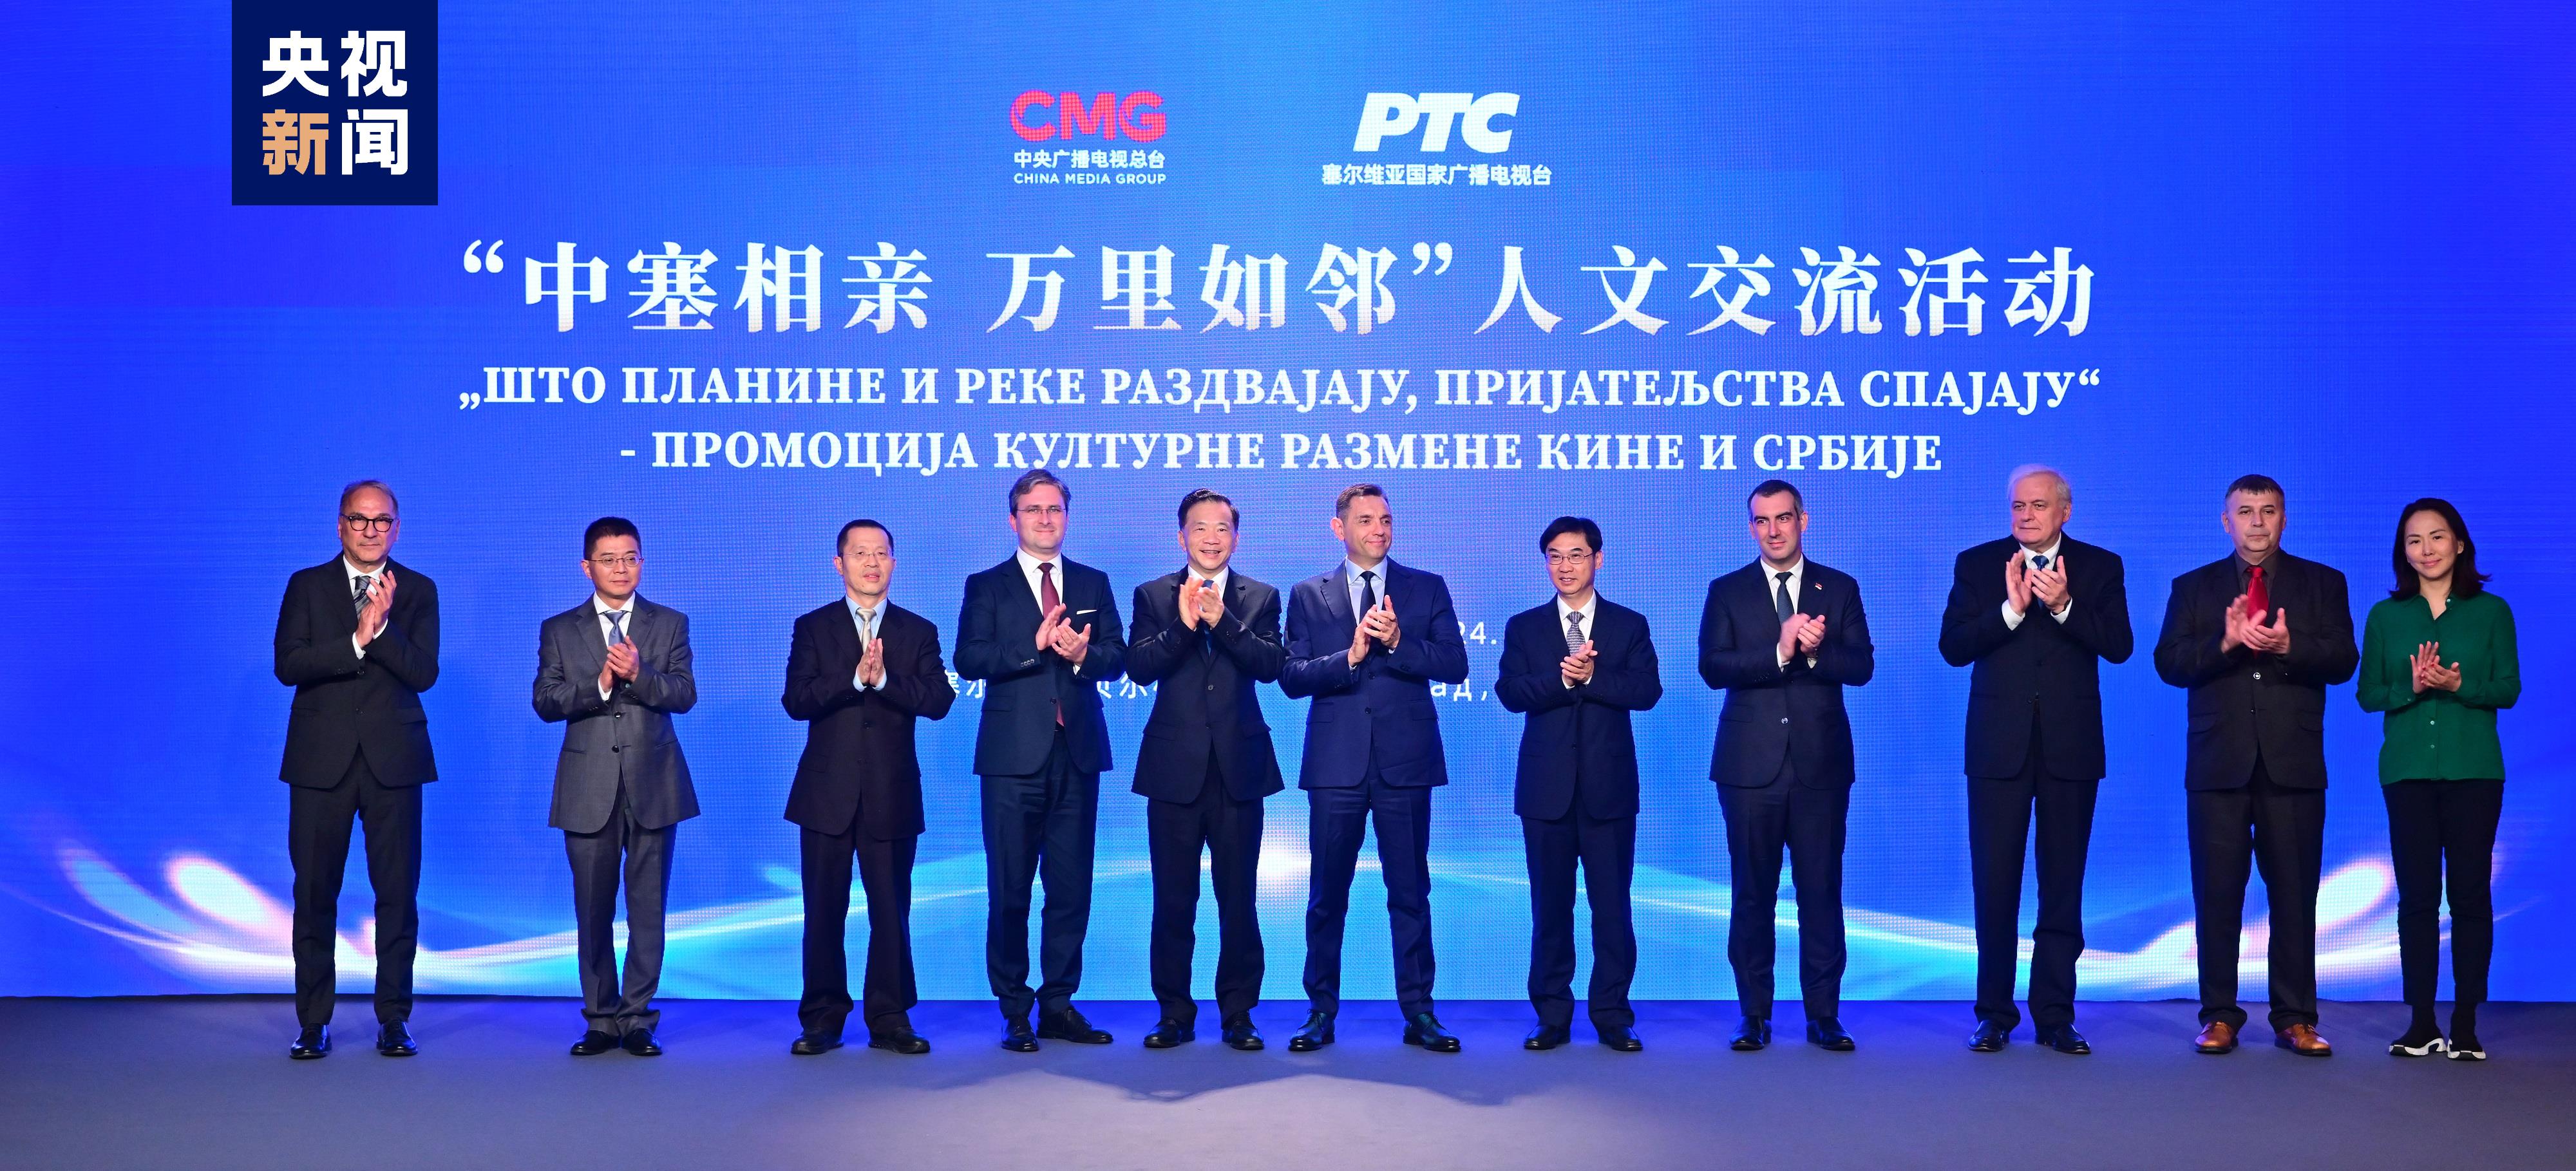 Atividade de intercâmbio interpessoal China-Sérvia é realizada em Belgrado